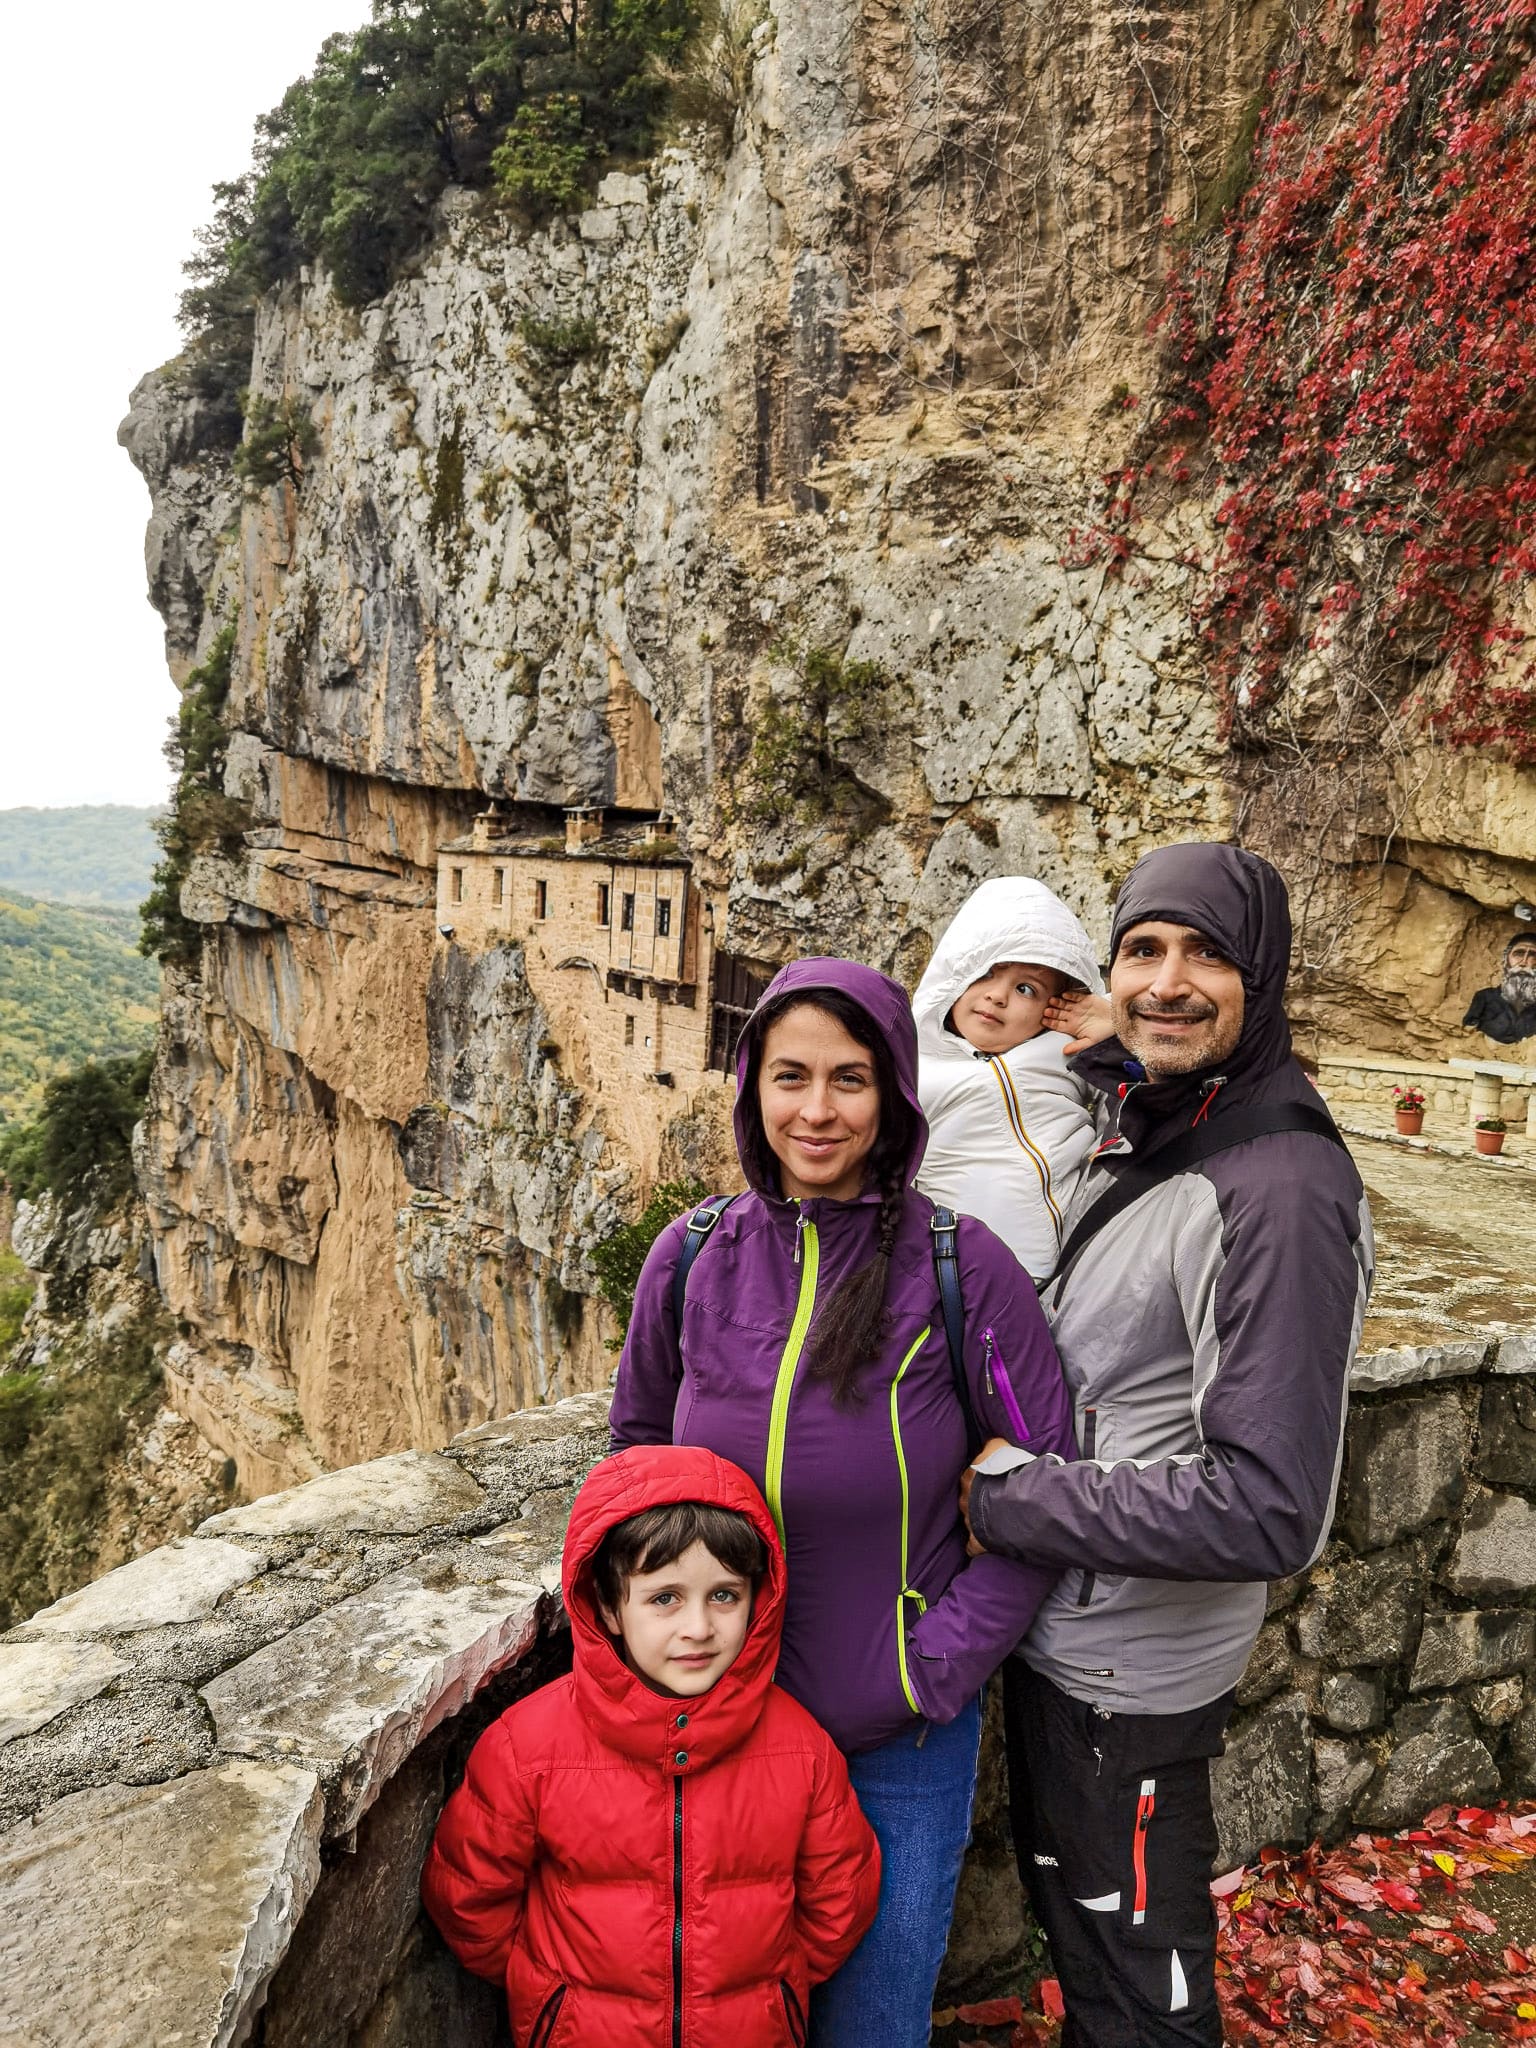 Famiglia in viaggio in Epiro Grecia nella regione di Tzoumerka